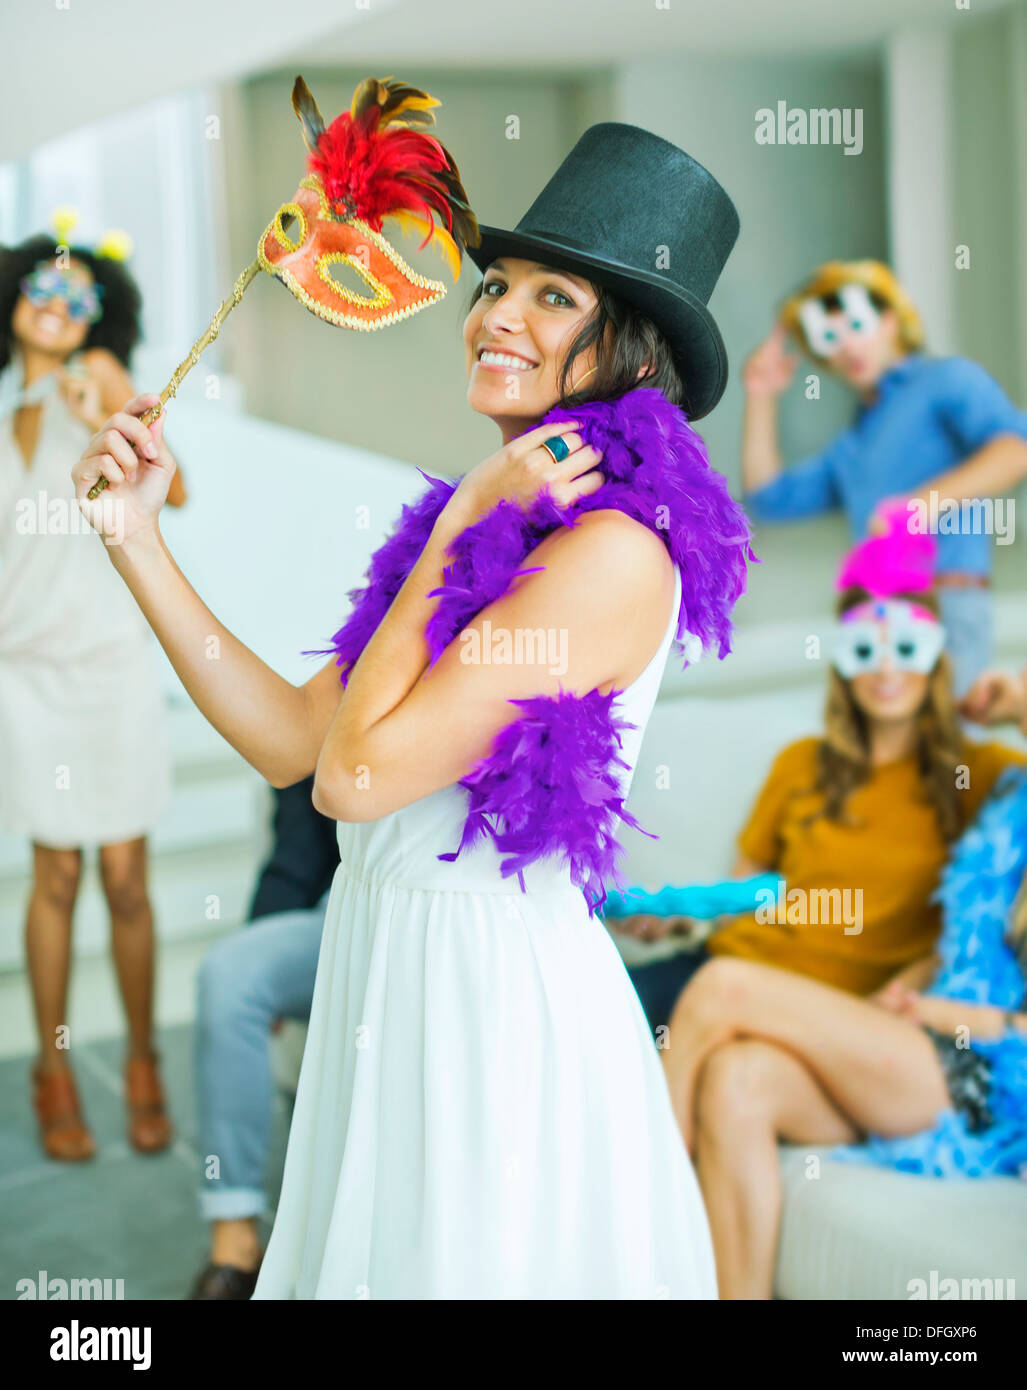 Femme portant un chapeau ridicule Photo Stock - Alamy